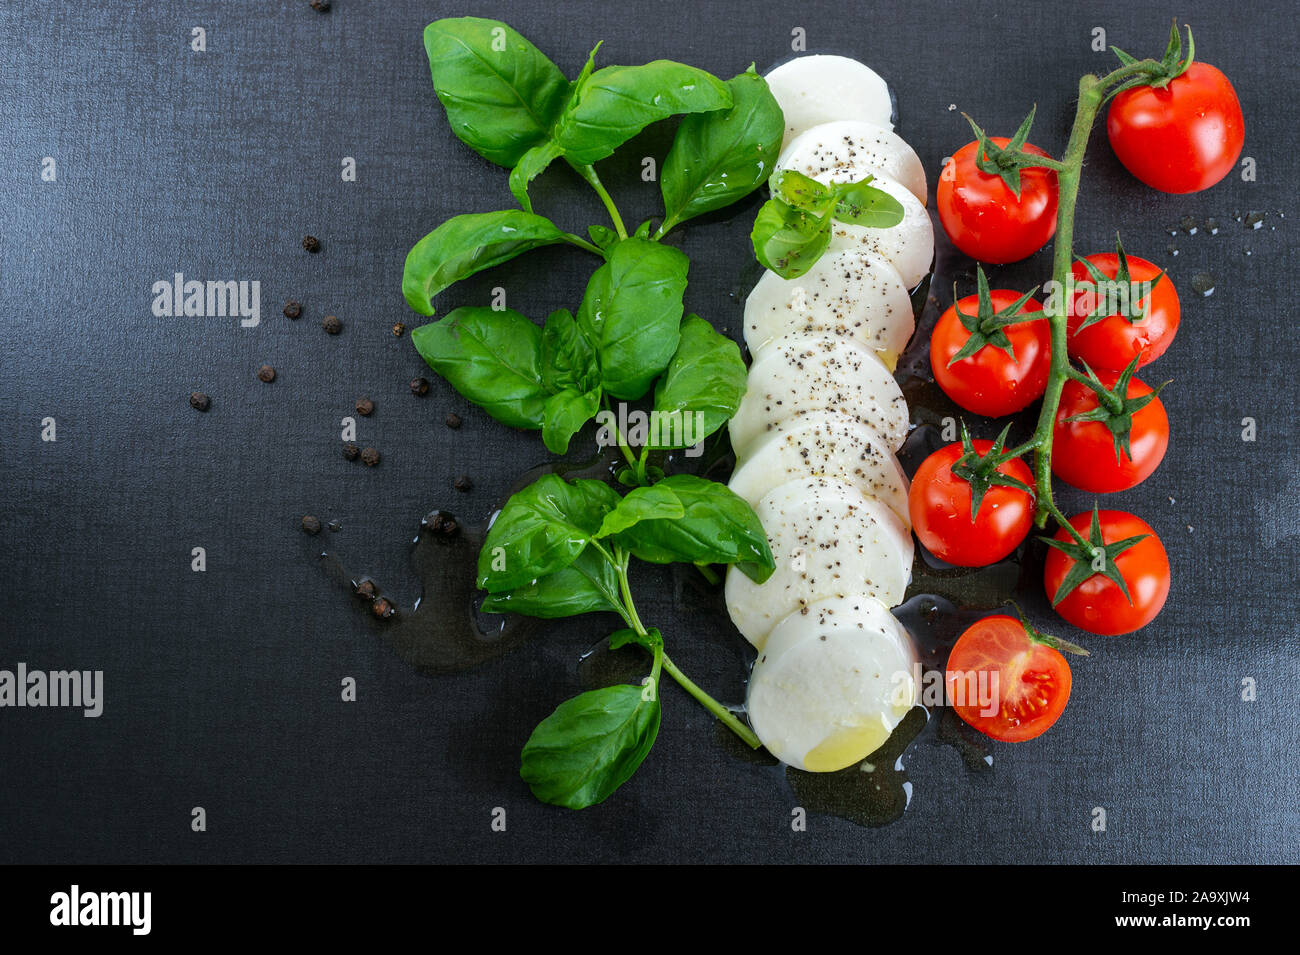 Comida italiana. Frseh albahaca, mozzarella, tomate, pimienta negra y aceite de oliva. Foto de stock